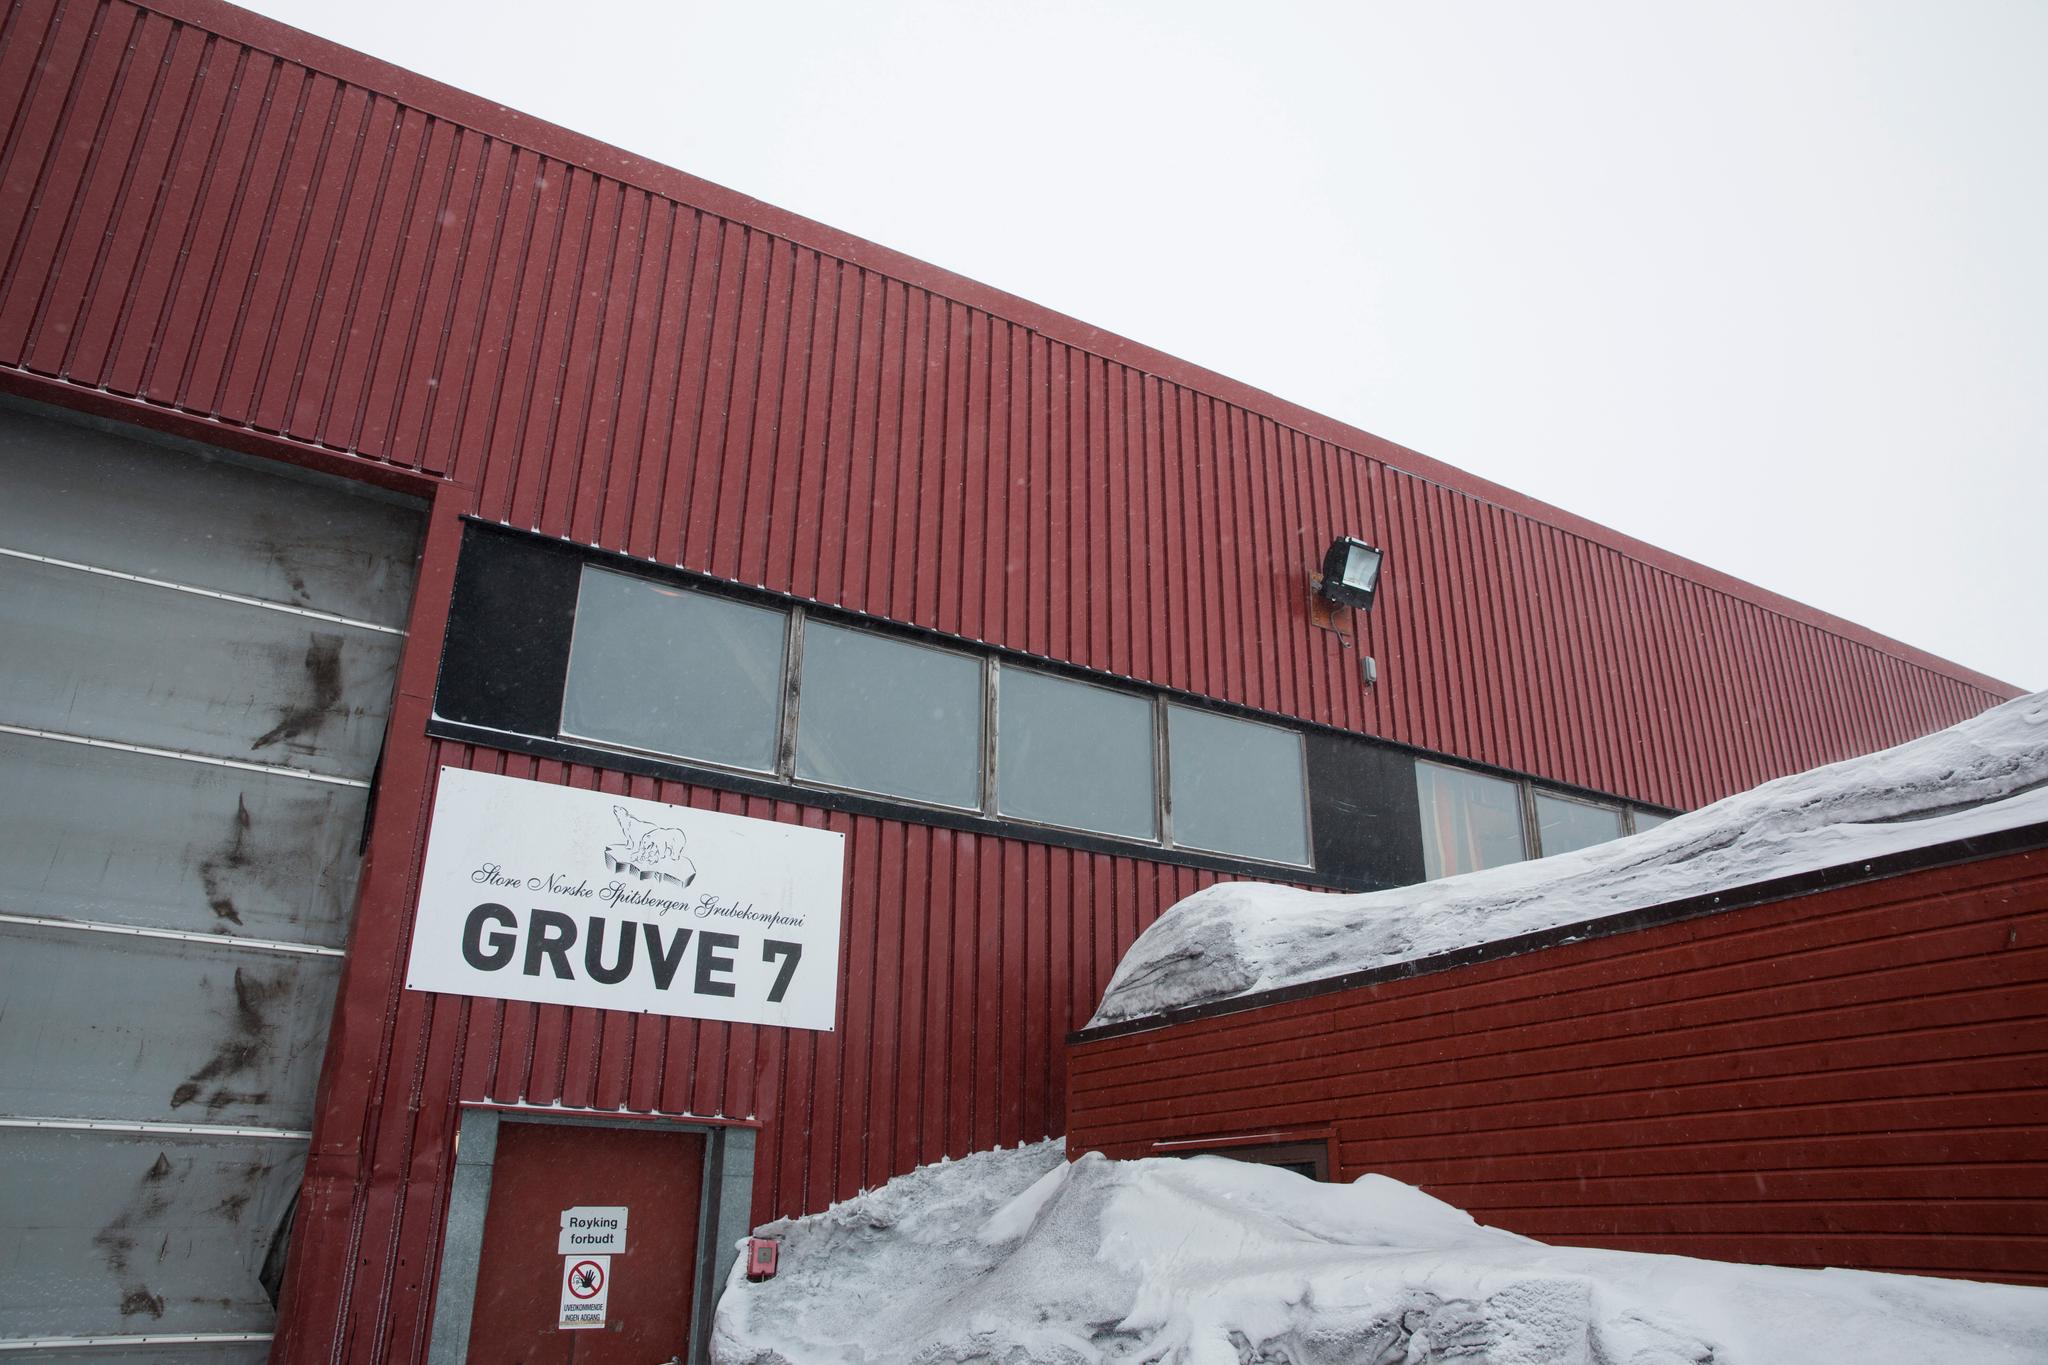 I 2018 ble det solgt 142.500 tonn kull fra Gruve 7, en økning fra 133.600 tonn året før. Gruven leverer hovedsakelig kull som gir strøm til Longyearbyen. Foto: Tore Meek / NTB scanpix